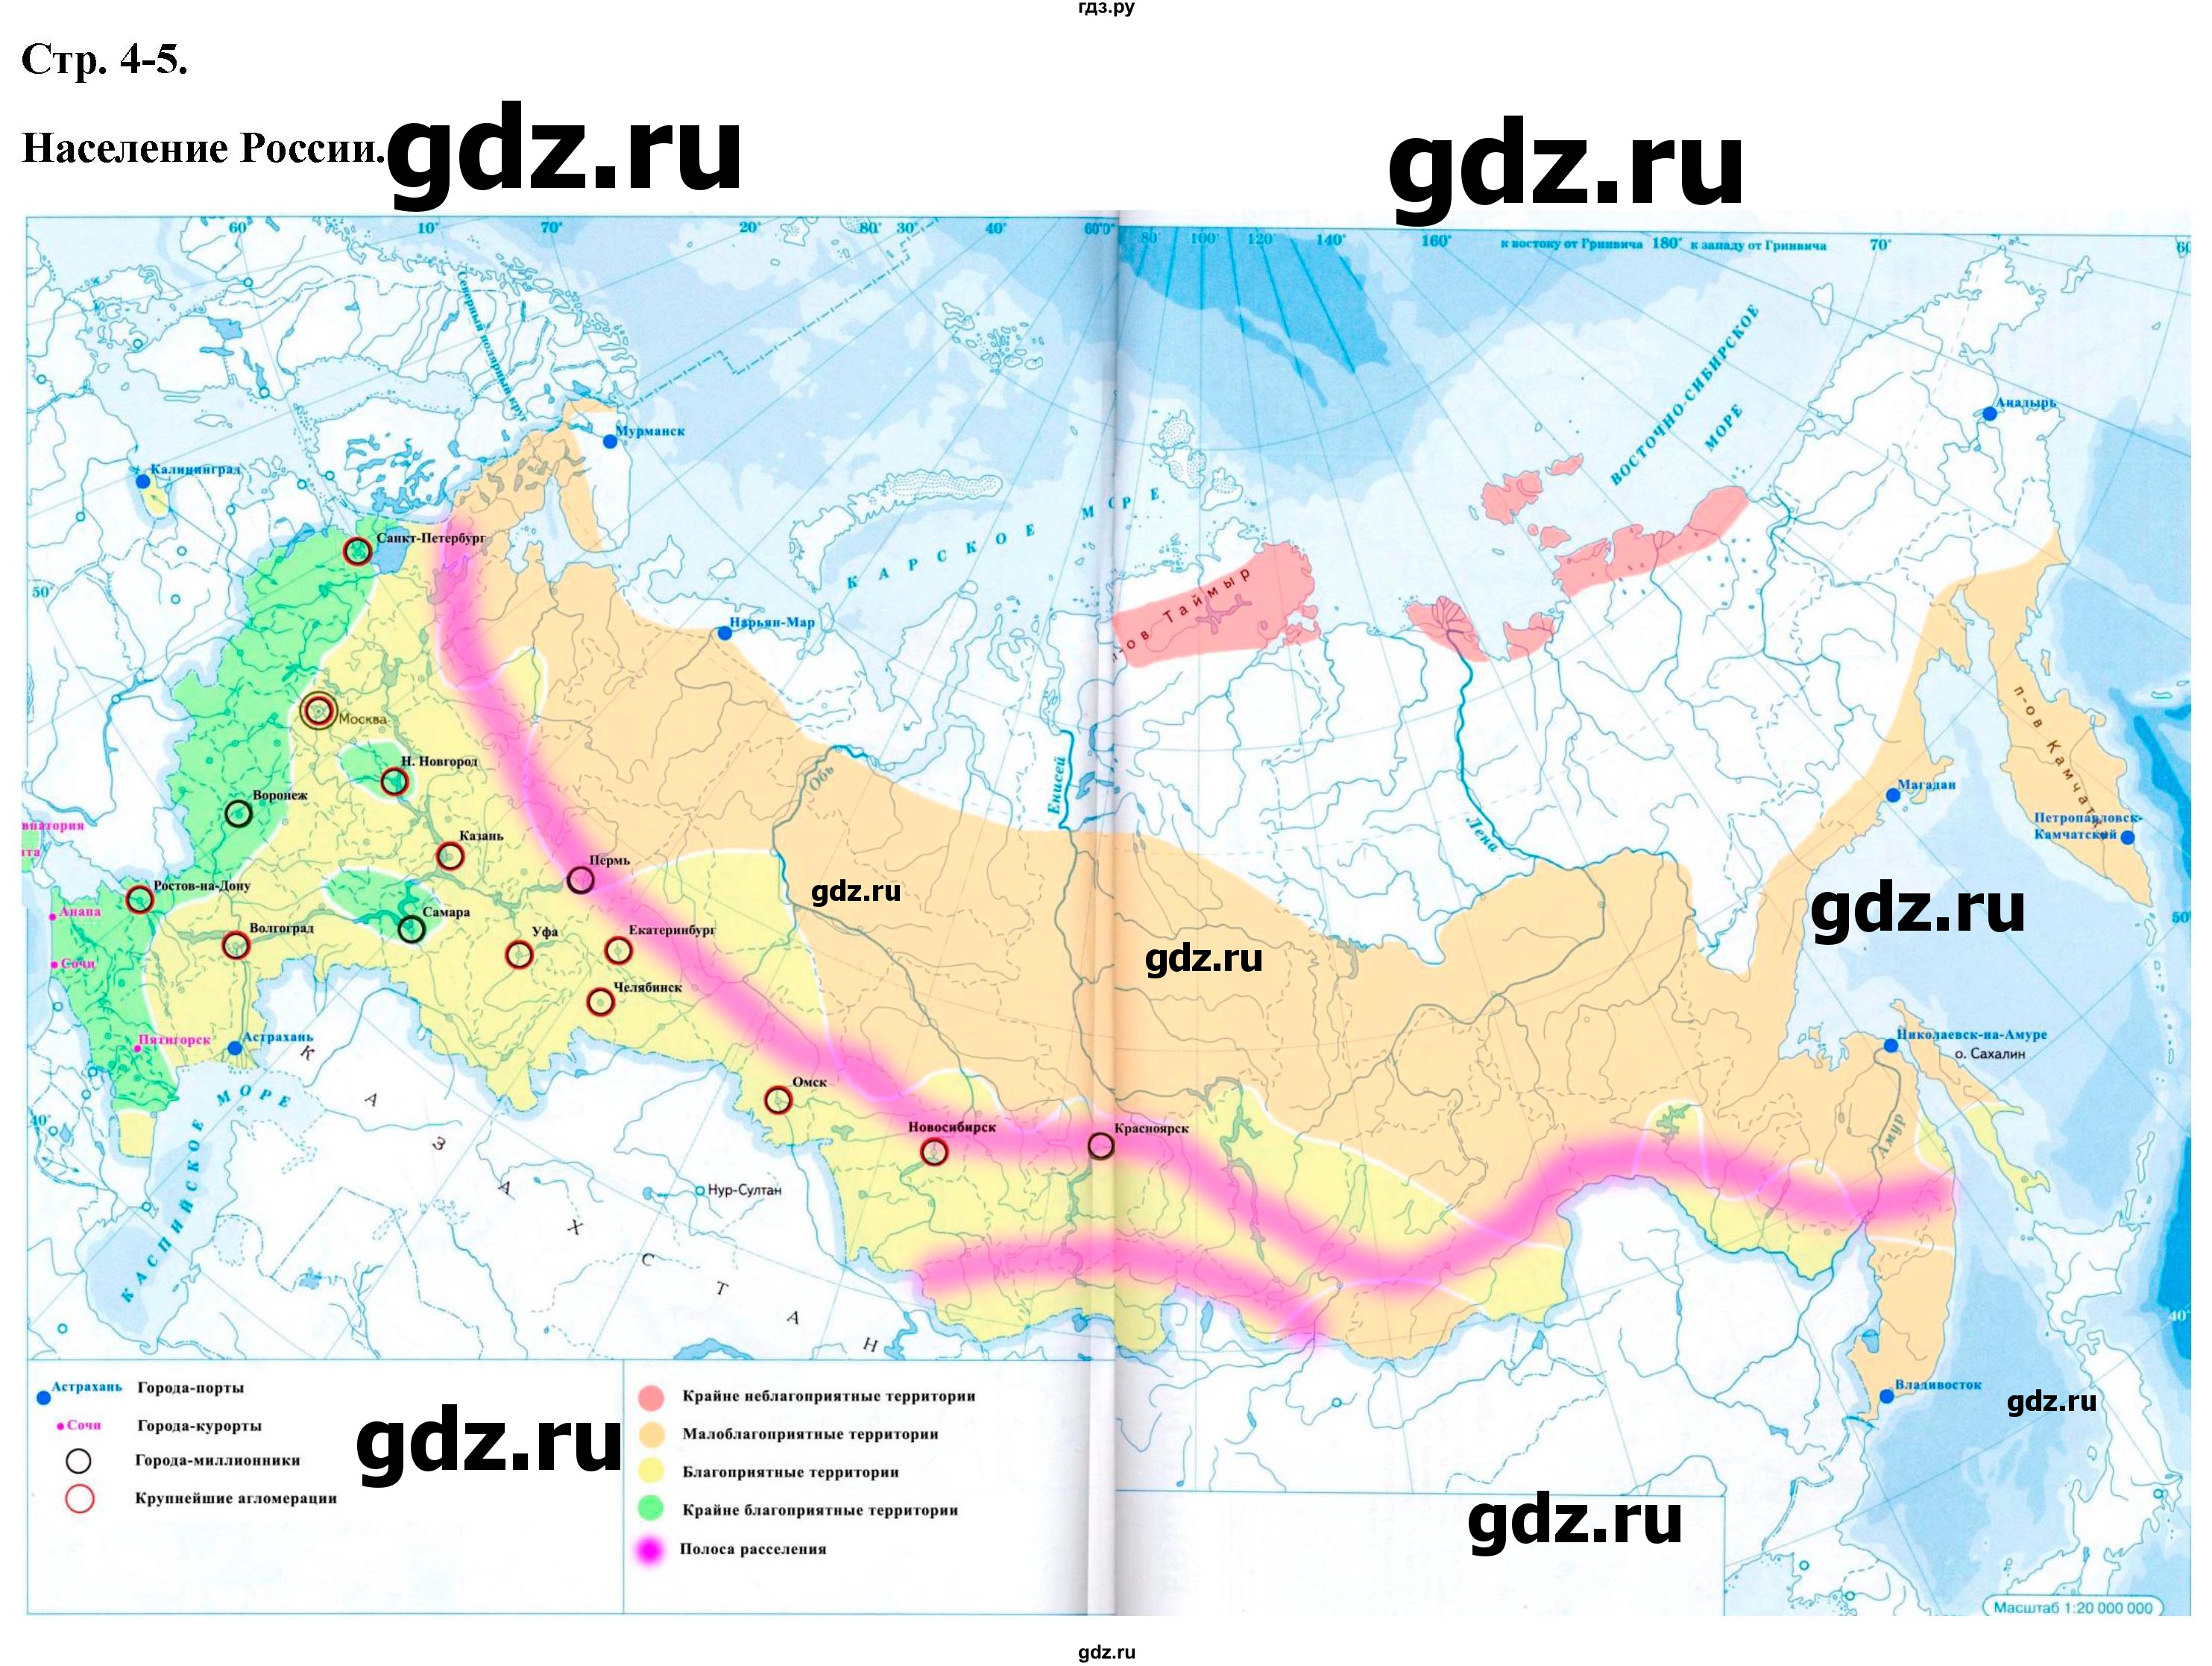 ГДЗ контурные карты стр.4-5 география 9 класс атлас с контурными картамиПриваловский, Курбский